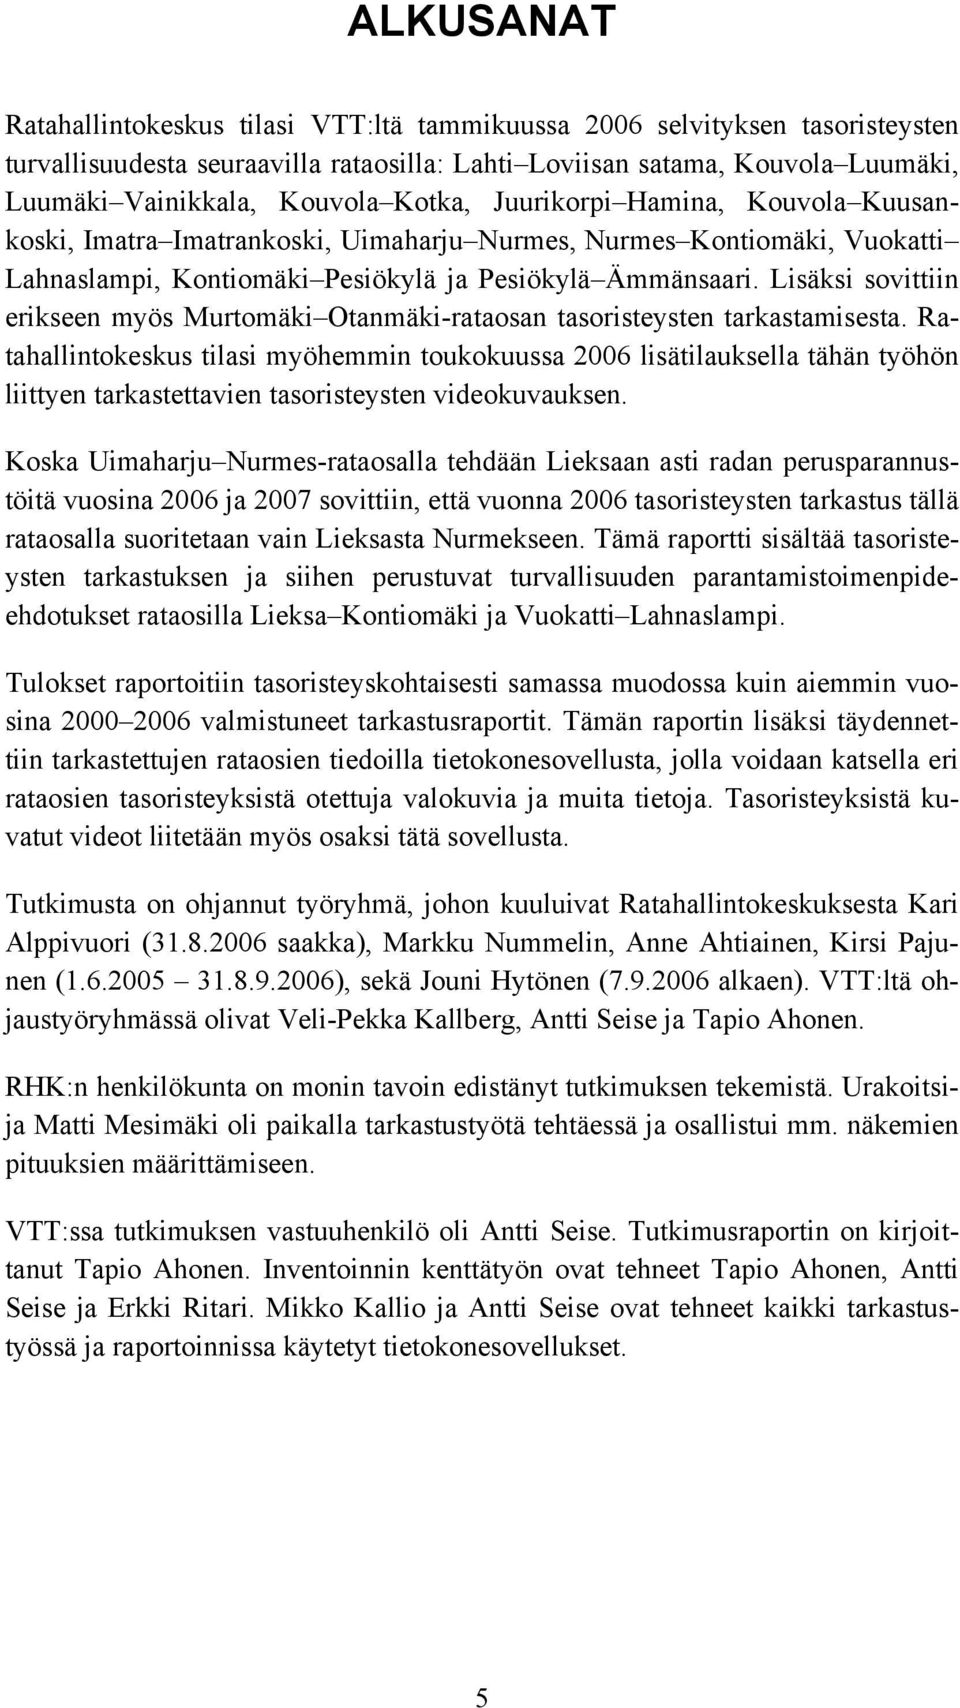 Lisäksi sovittiin erikseen myös Murtomäki Otanmäki-rataosan tasoristeysten tarkastamisesta.